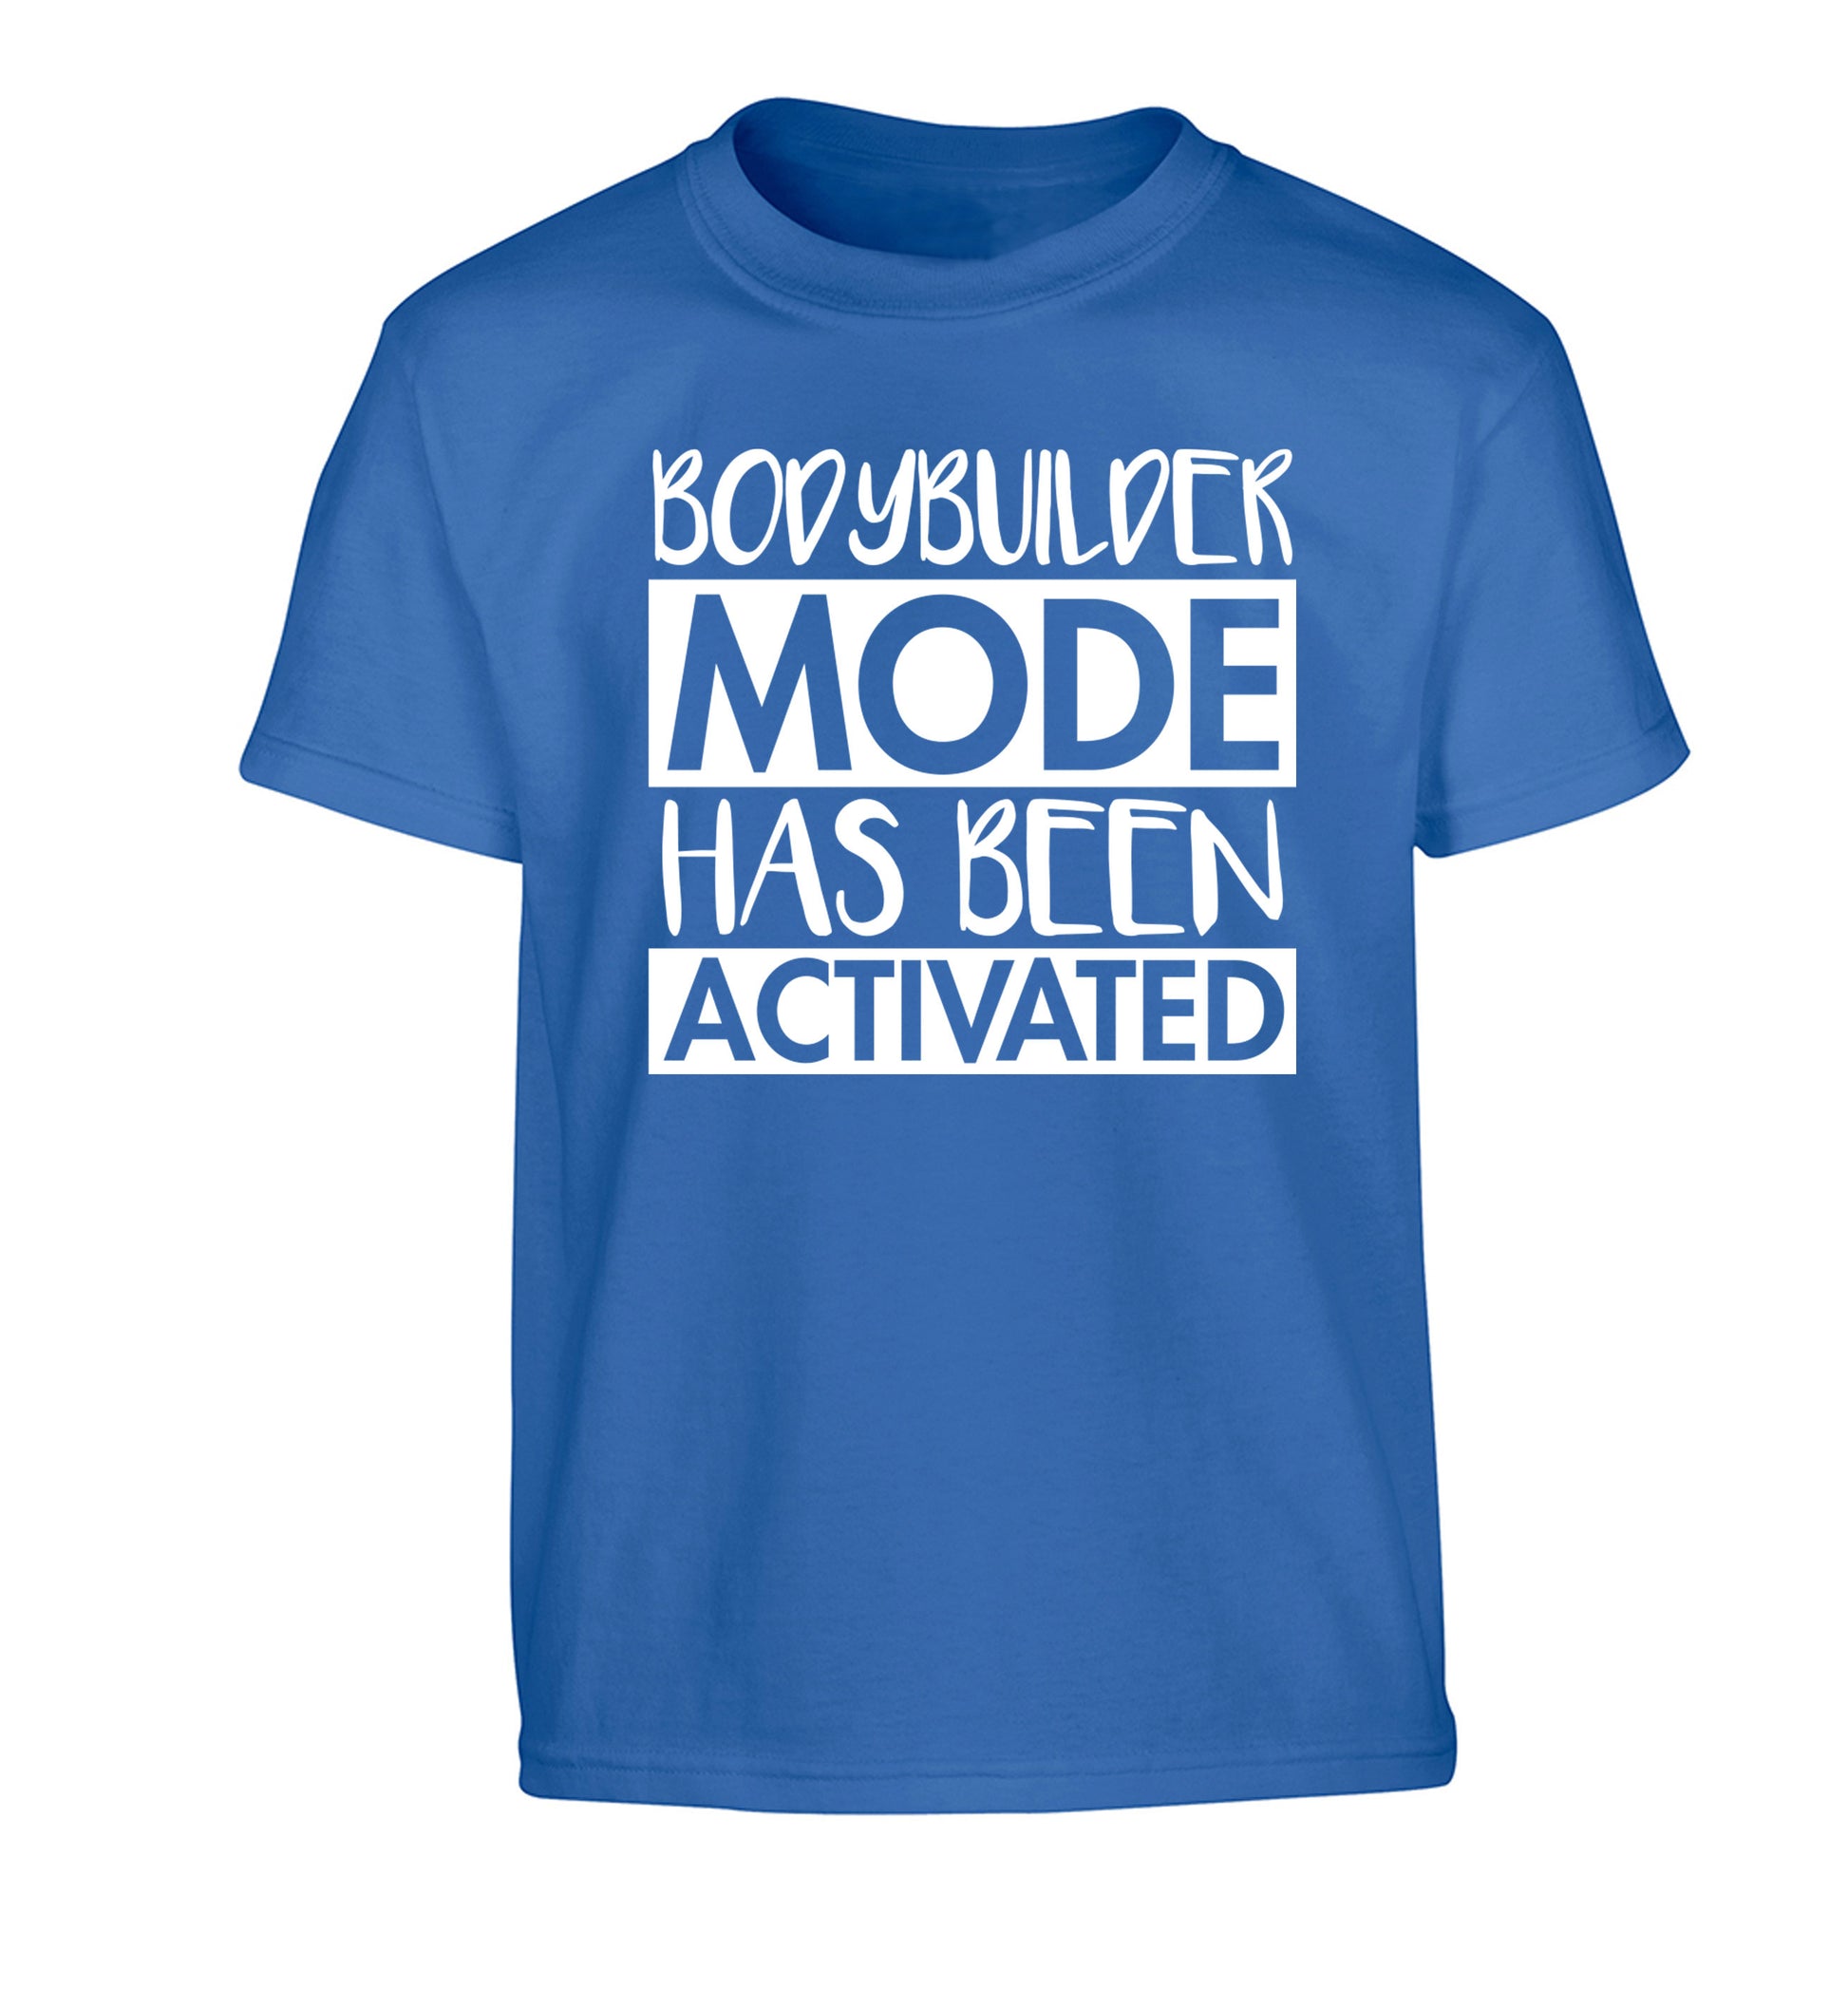 Bodybuilder mode activated Children's blue Tshirt 12-14 Years